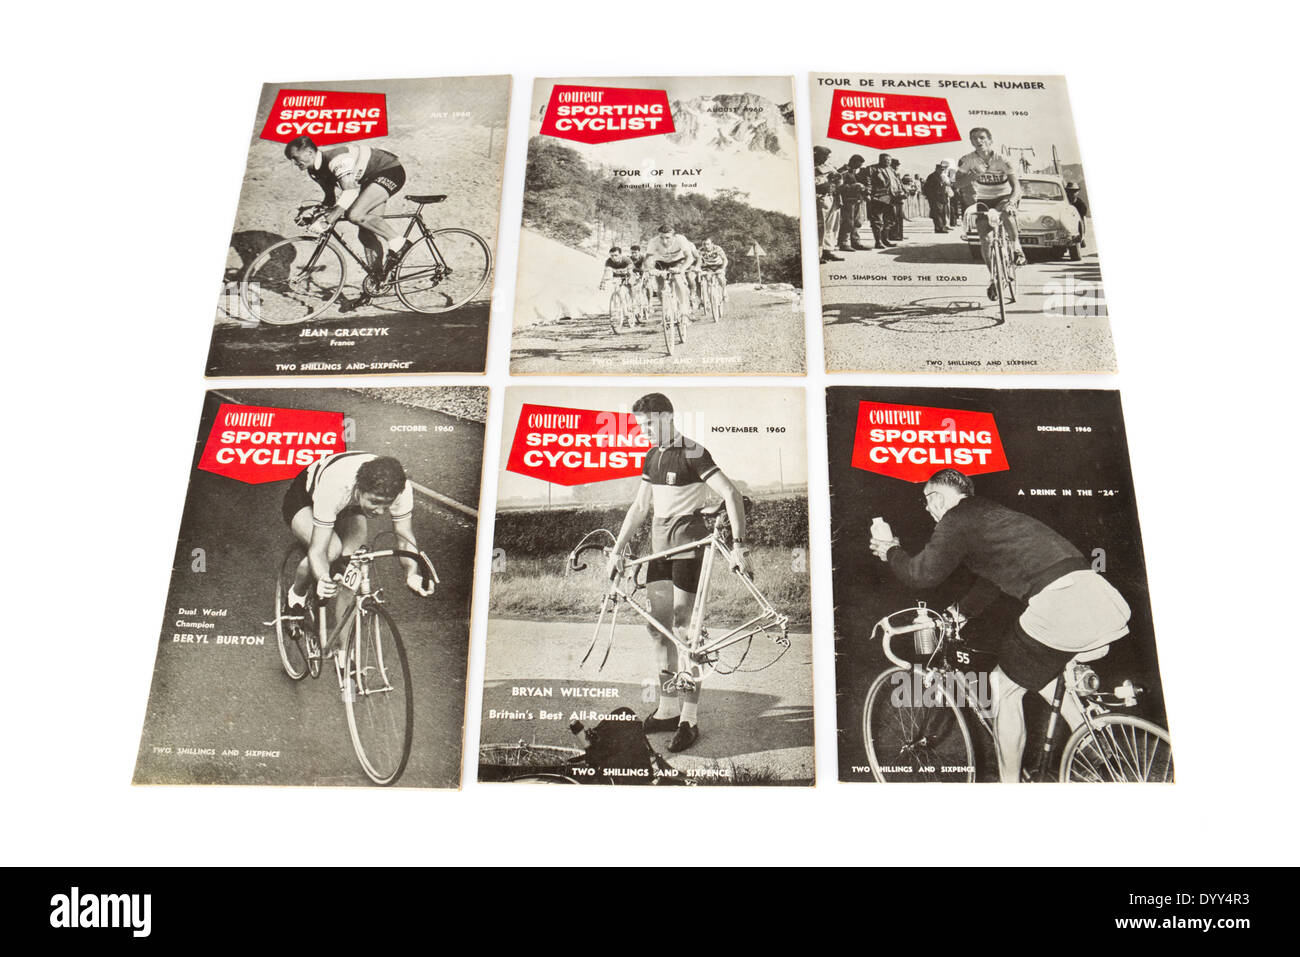 Sélection de vintage 'coureur cycliste sportif' de magazines de 1960, y compris le Tour de France "spécial" de cette année. Banque D'Images